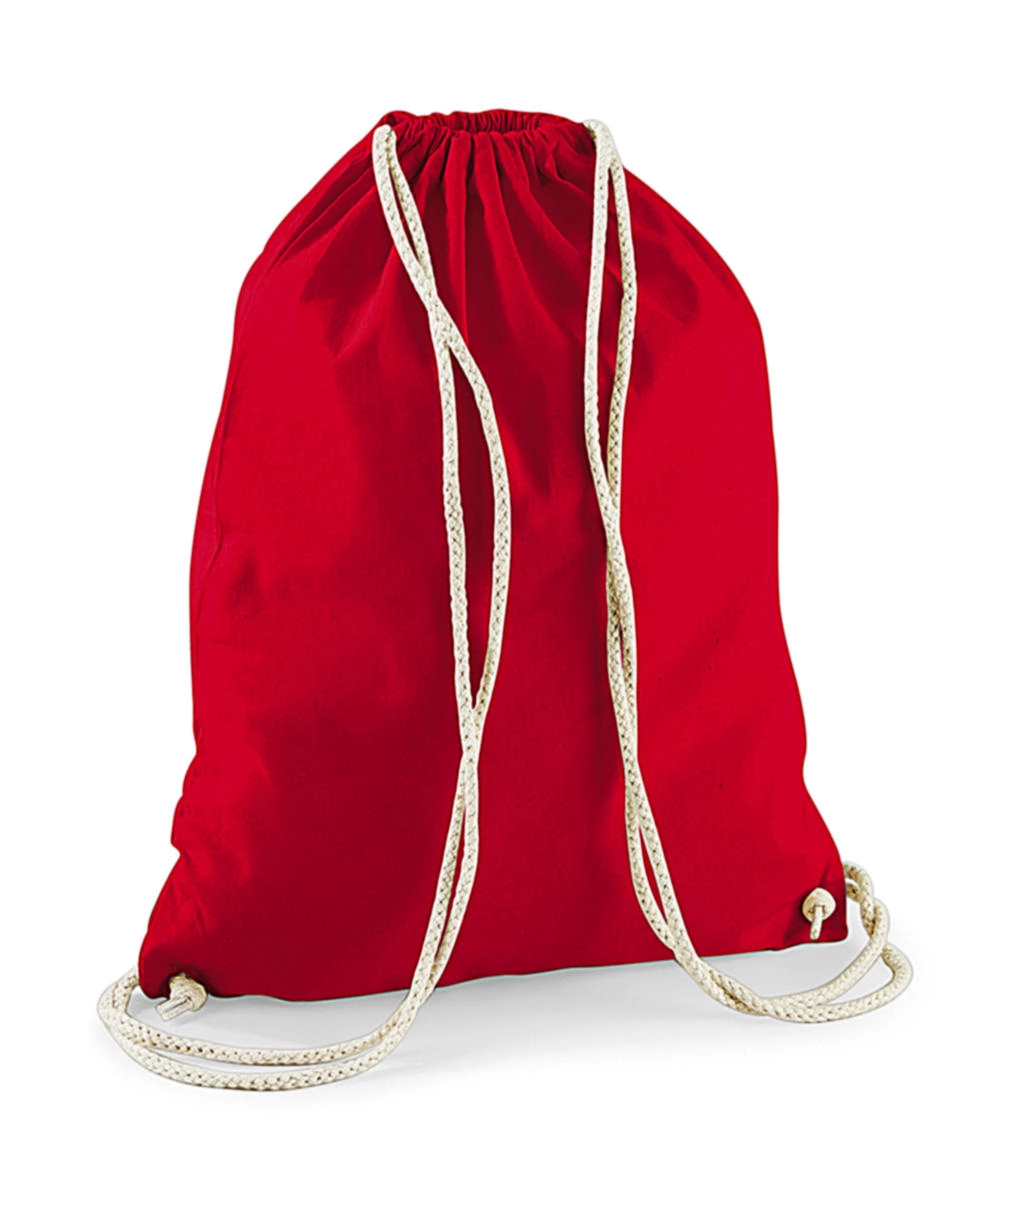 Cotton Gymsac zum Besticken und Bedrucken in der Farbe Classic Red mit Ihren Logo, Schriftzug oder Motiv.